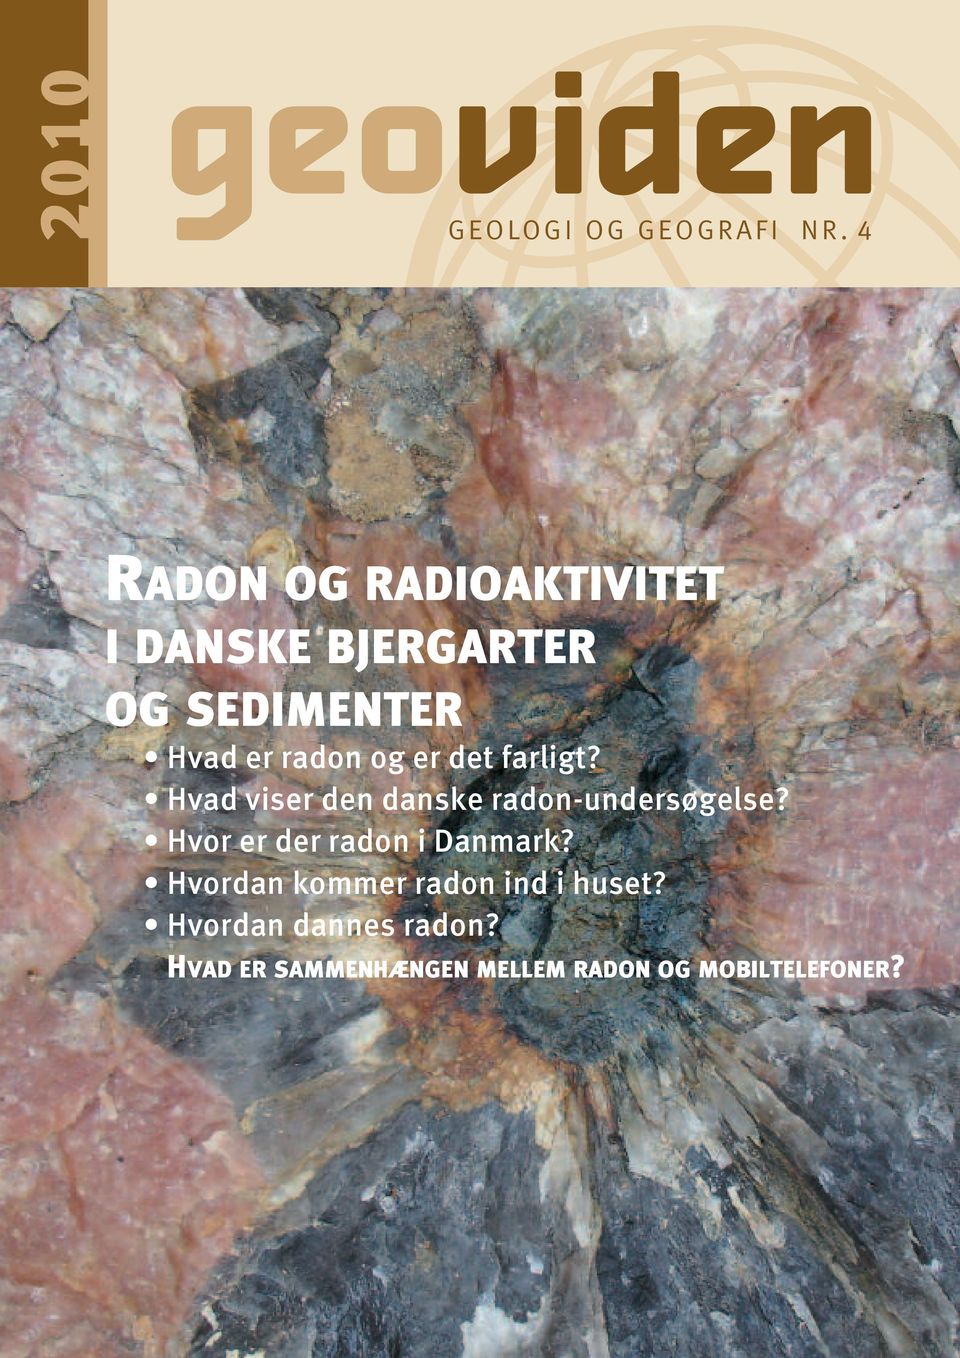 er det farligt? Hvad viser den danske radon-undersøgelse?